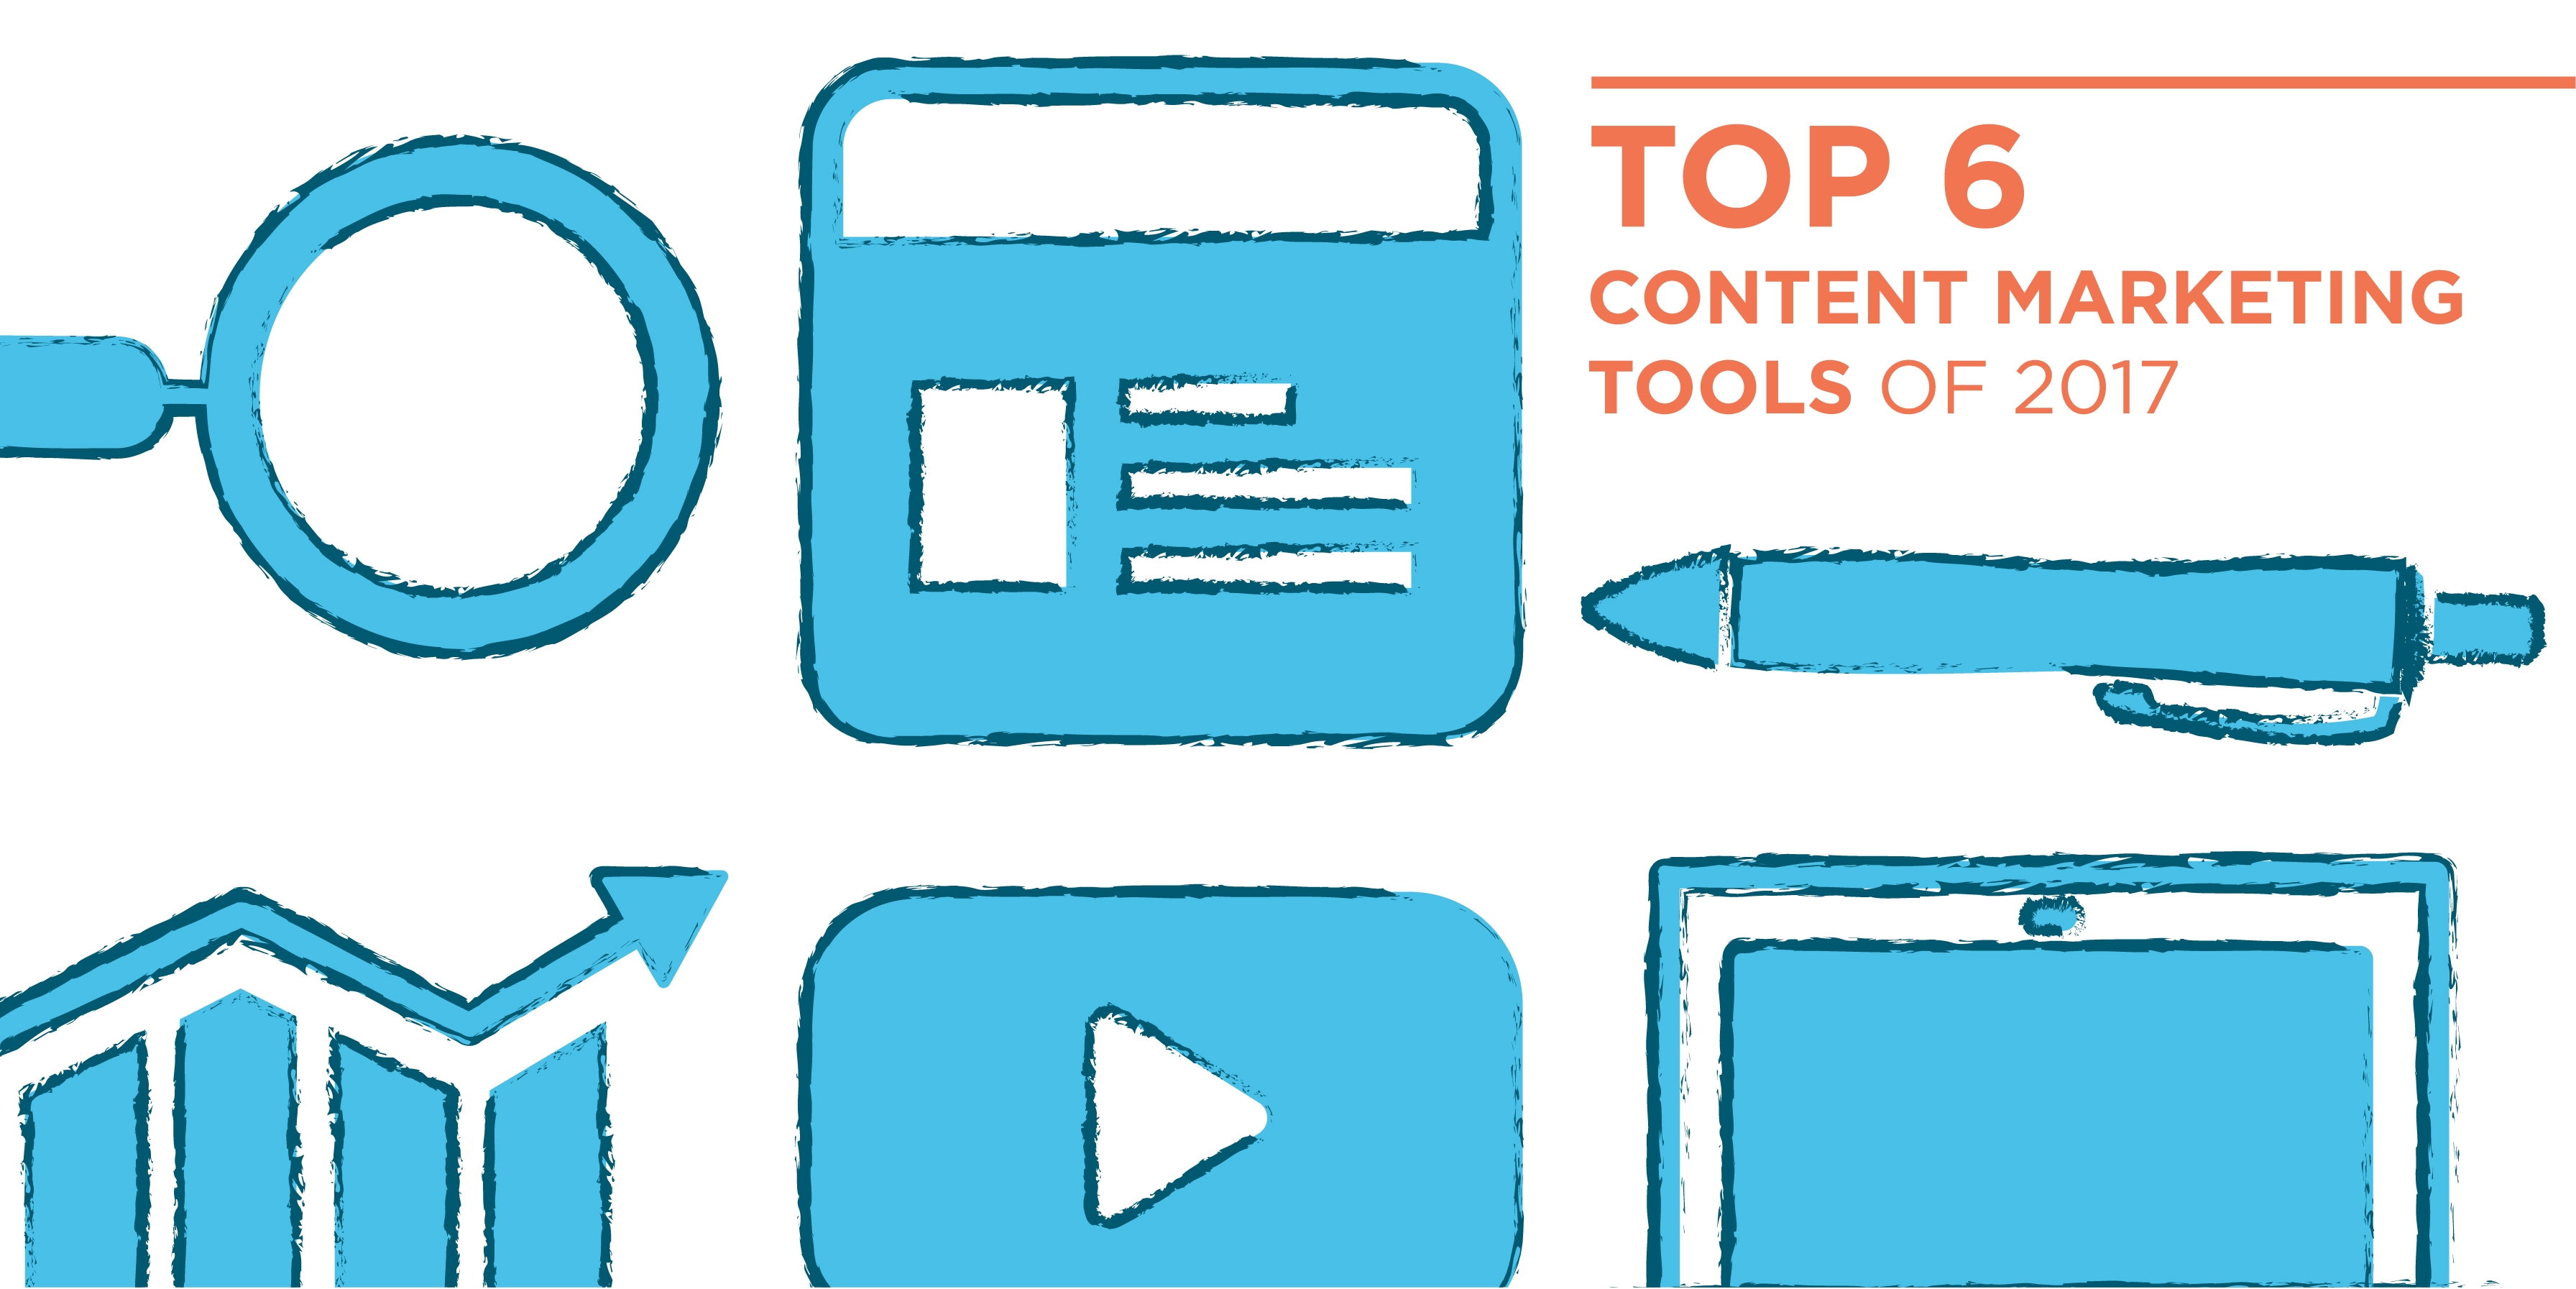 Top 6 Content Marketing Tools of 2017 (So Far)